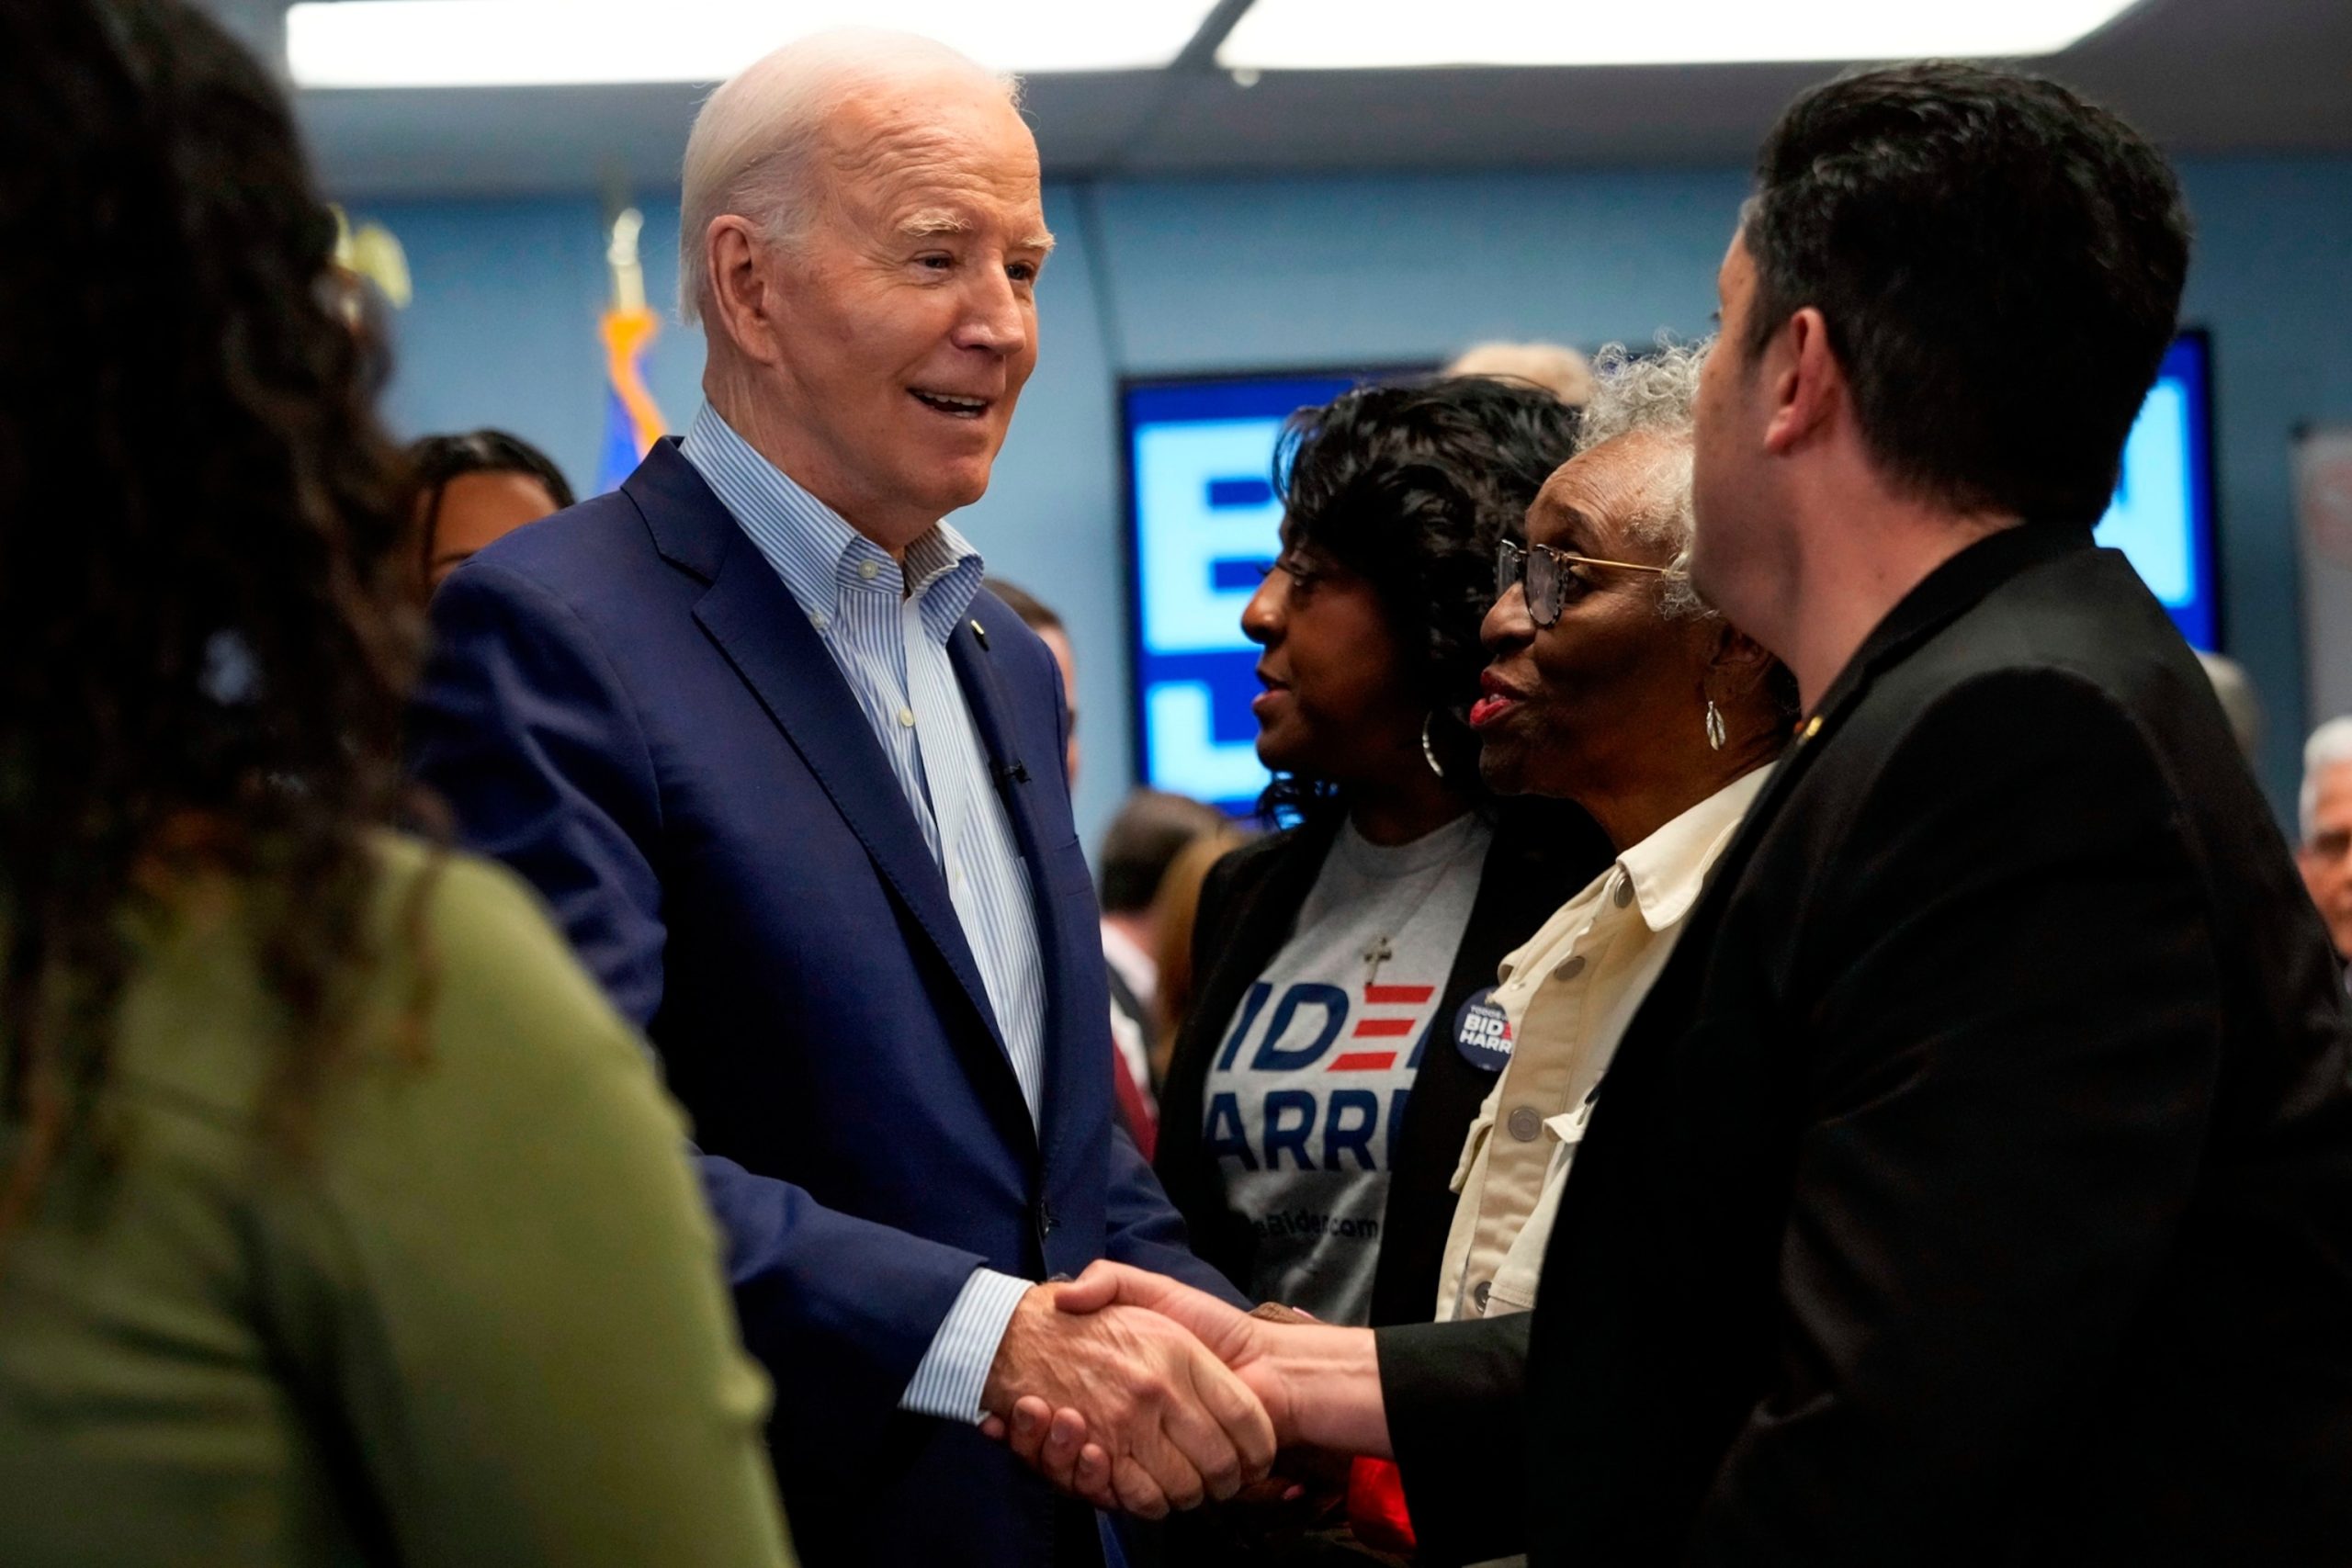 Biden travels to Arizona and Nevada to engage Latino voters